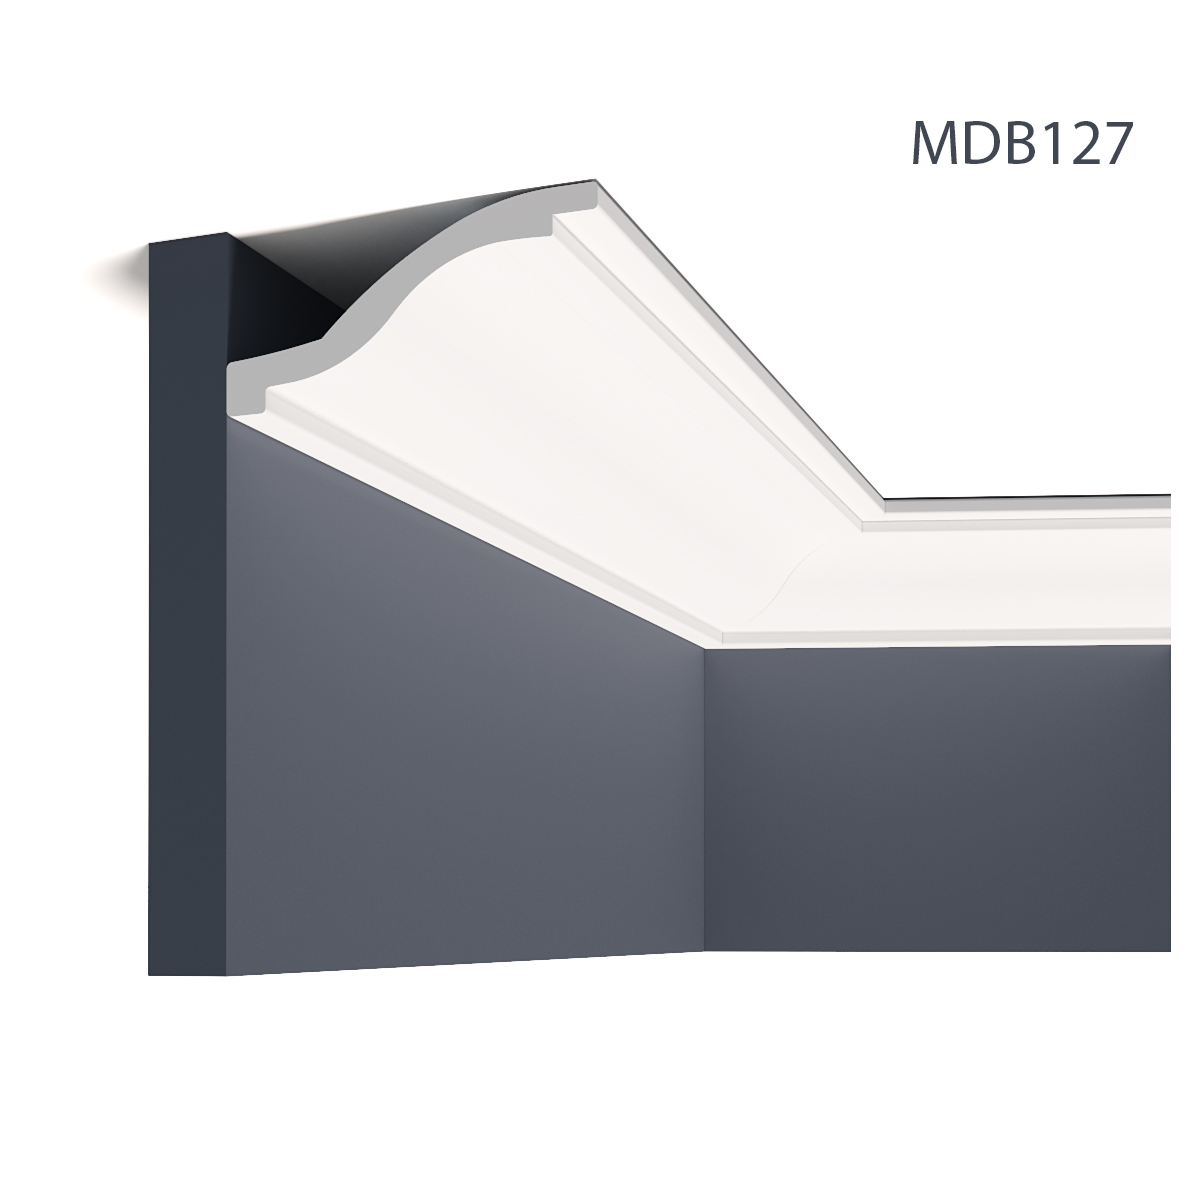 Profile Decorative Mardom Decor MRD-MDB127. Conține culorile: